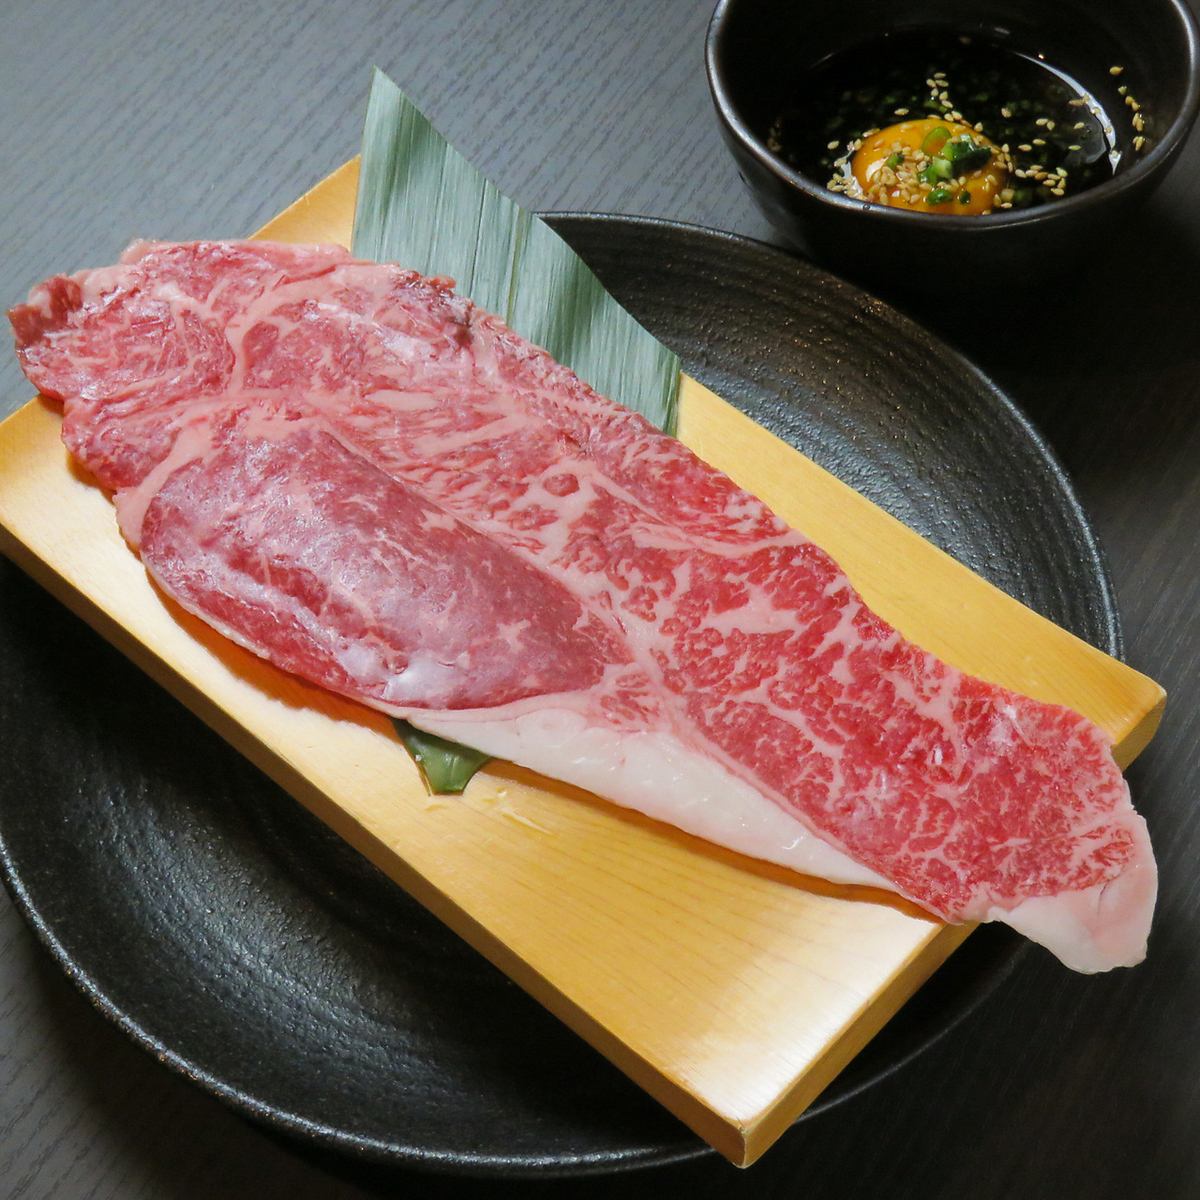 烤肉餐厅，您可以以合理的价格享用稀有的日本牛肉和厚舌片〜Mashigura〜